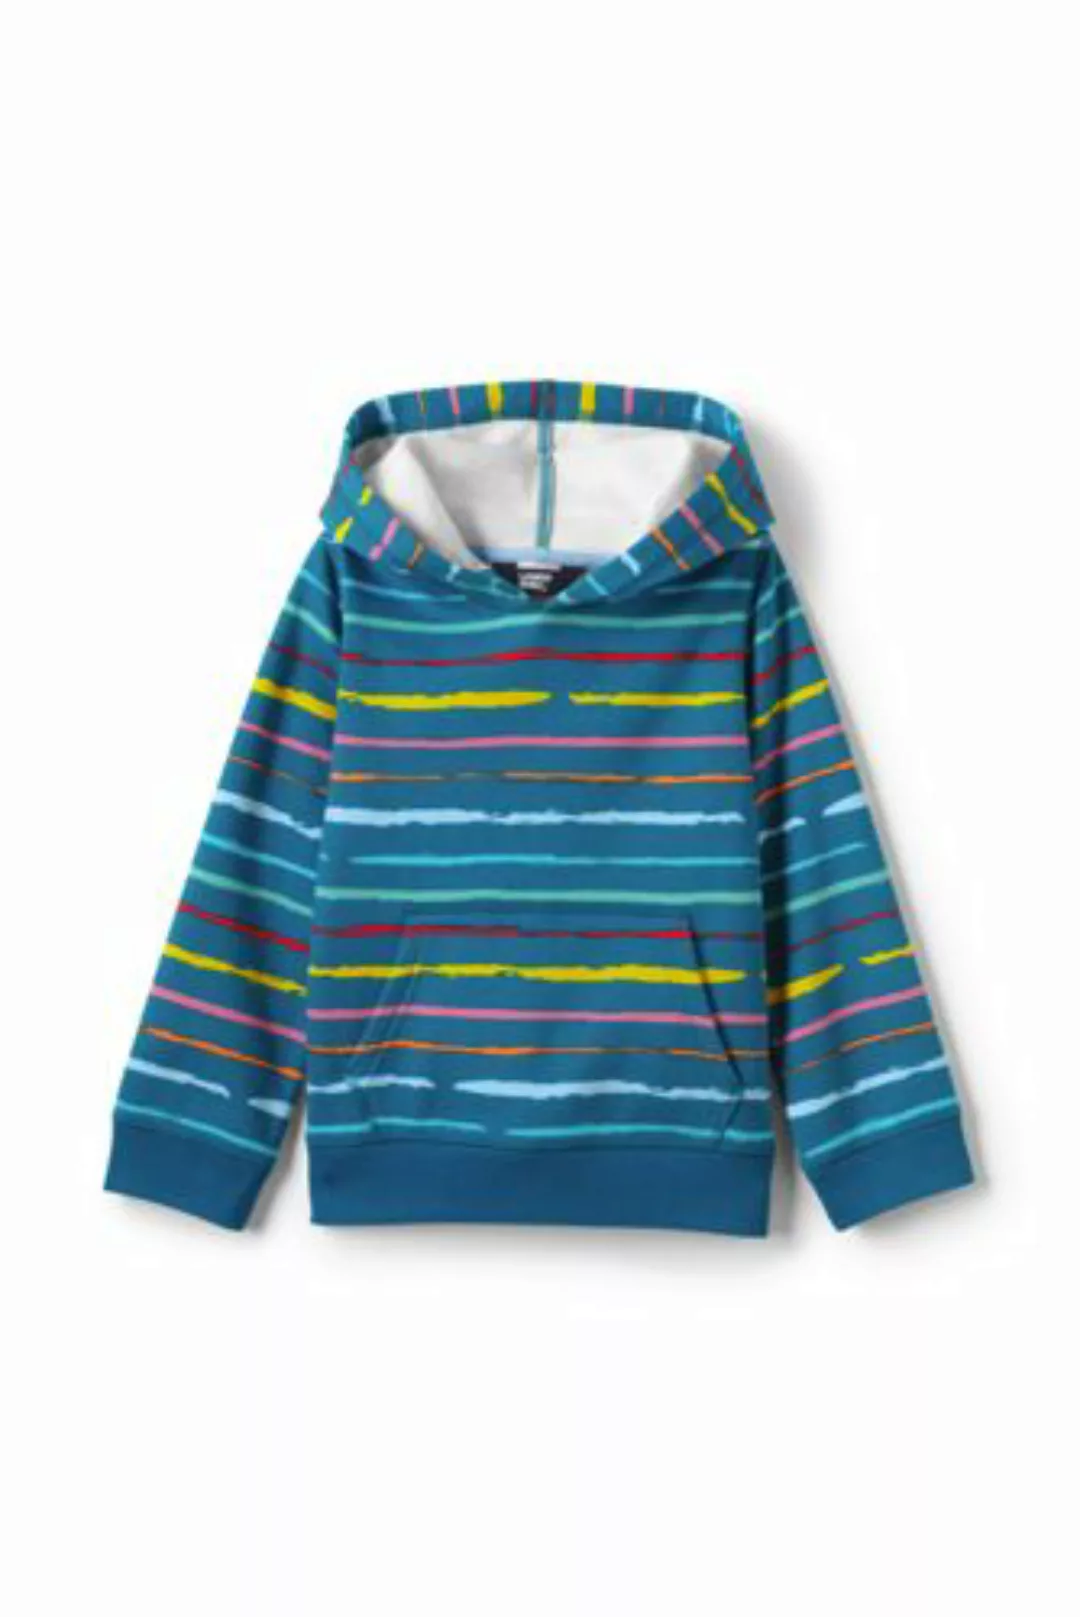 Sweatshirt-Hoodie, Größe: 128-134, Blau, Polyester, by Lands' End, Petrol P günstig online kaufen